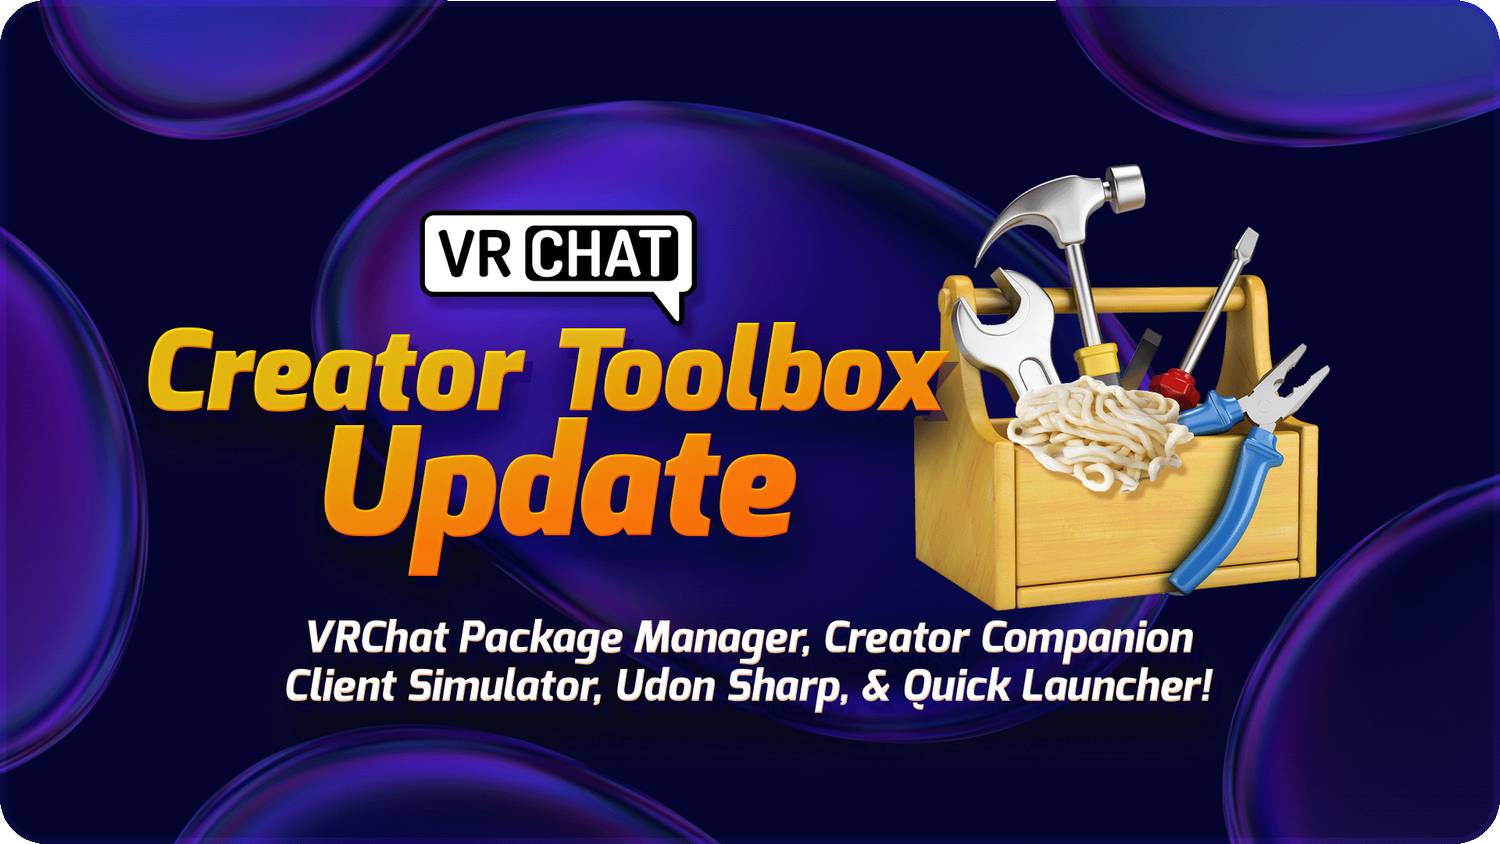 VRChatクリエイターツールボックスアップデート：VRChatパッケージマネジャー、クライアントシミュレーター、Udon Sharp、そしてクイックランチャー！